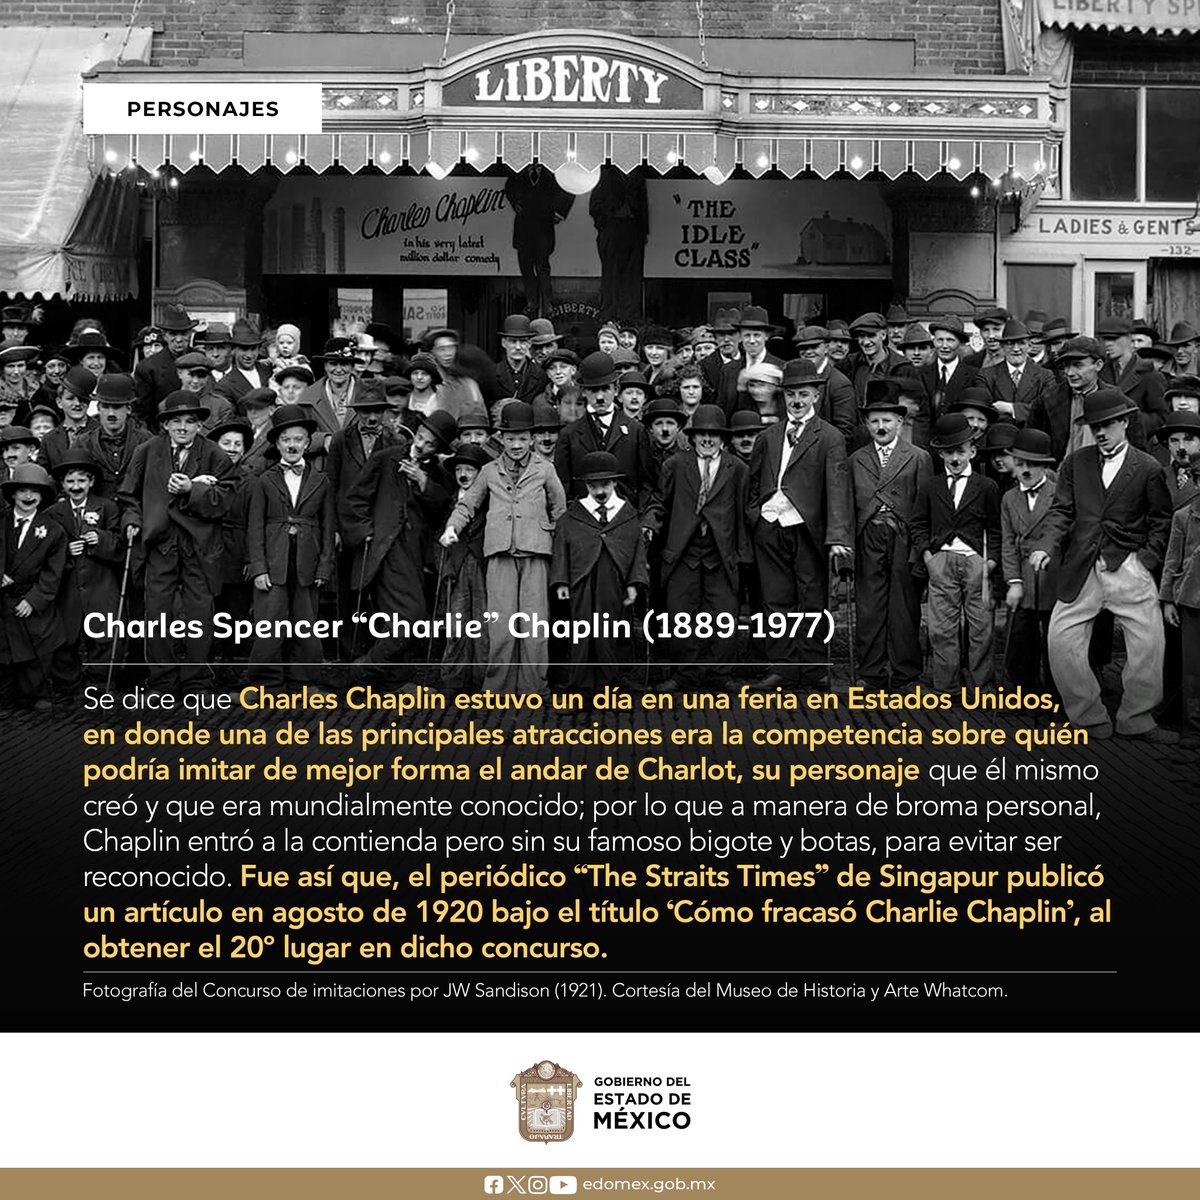 #CharlesChaplin nació el 16 de abril en 1889 en #Inglaterra, fue un actor, humorista, compositor, productor, guionista, director, escritor y editor británico, que alcanzó fama mundial por su personaje #Charlot, quien es considerado un símbolo del humorismo del #CineMudo. #AGEMÉX